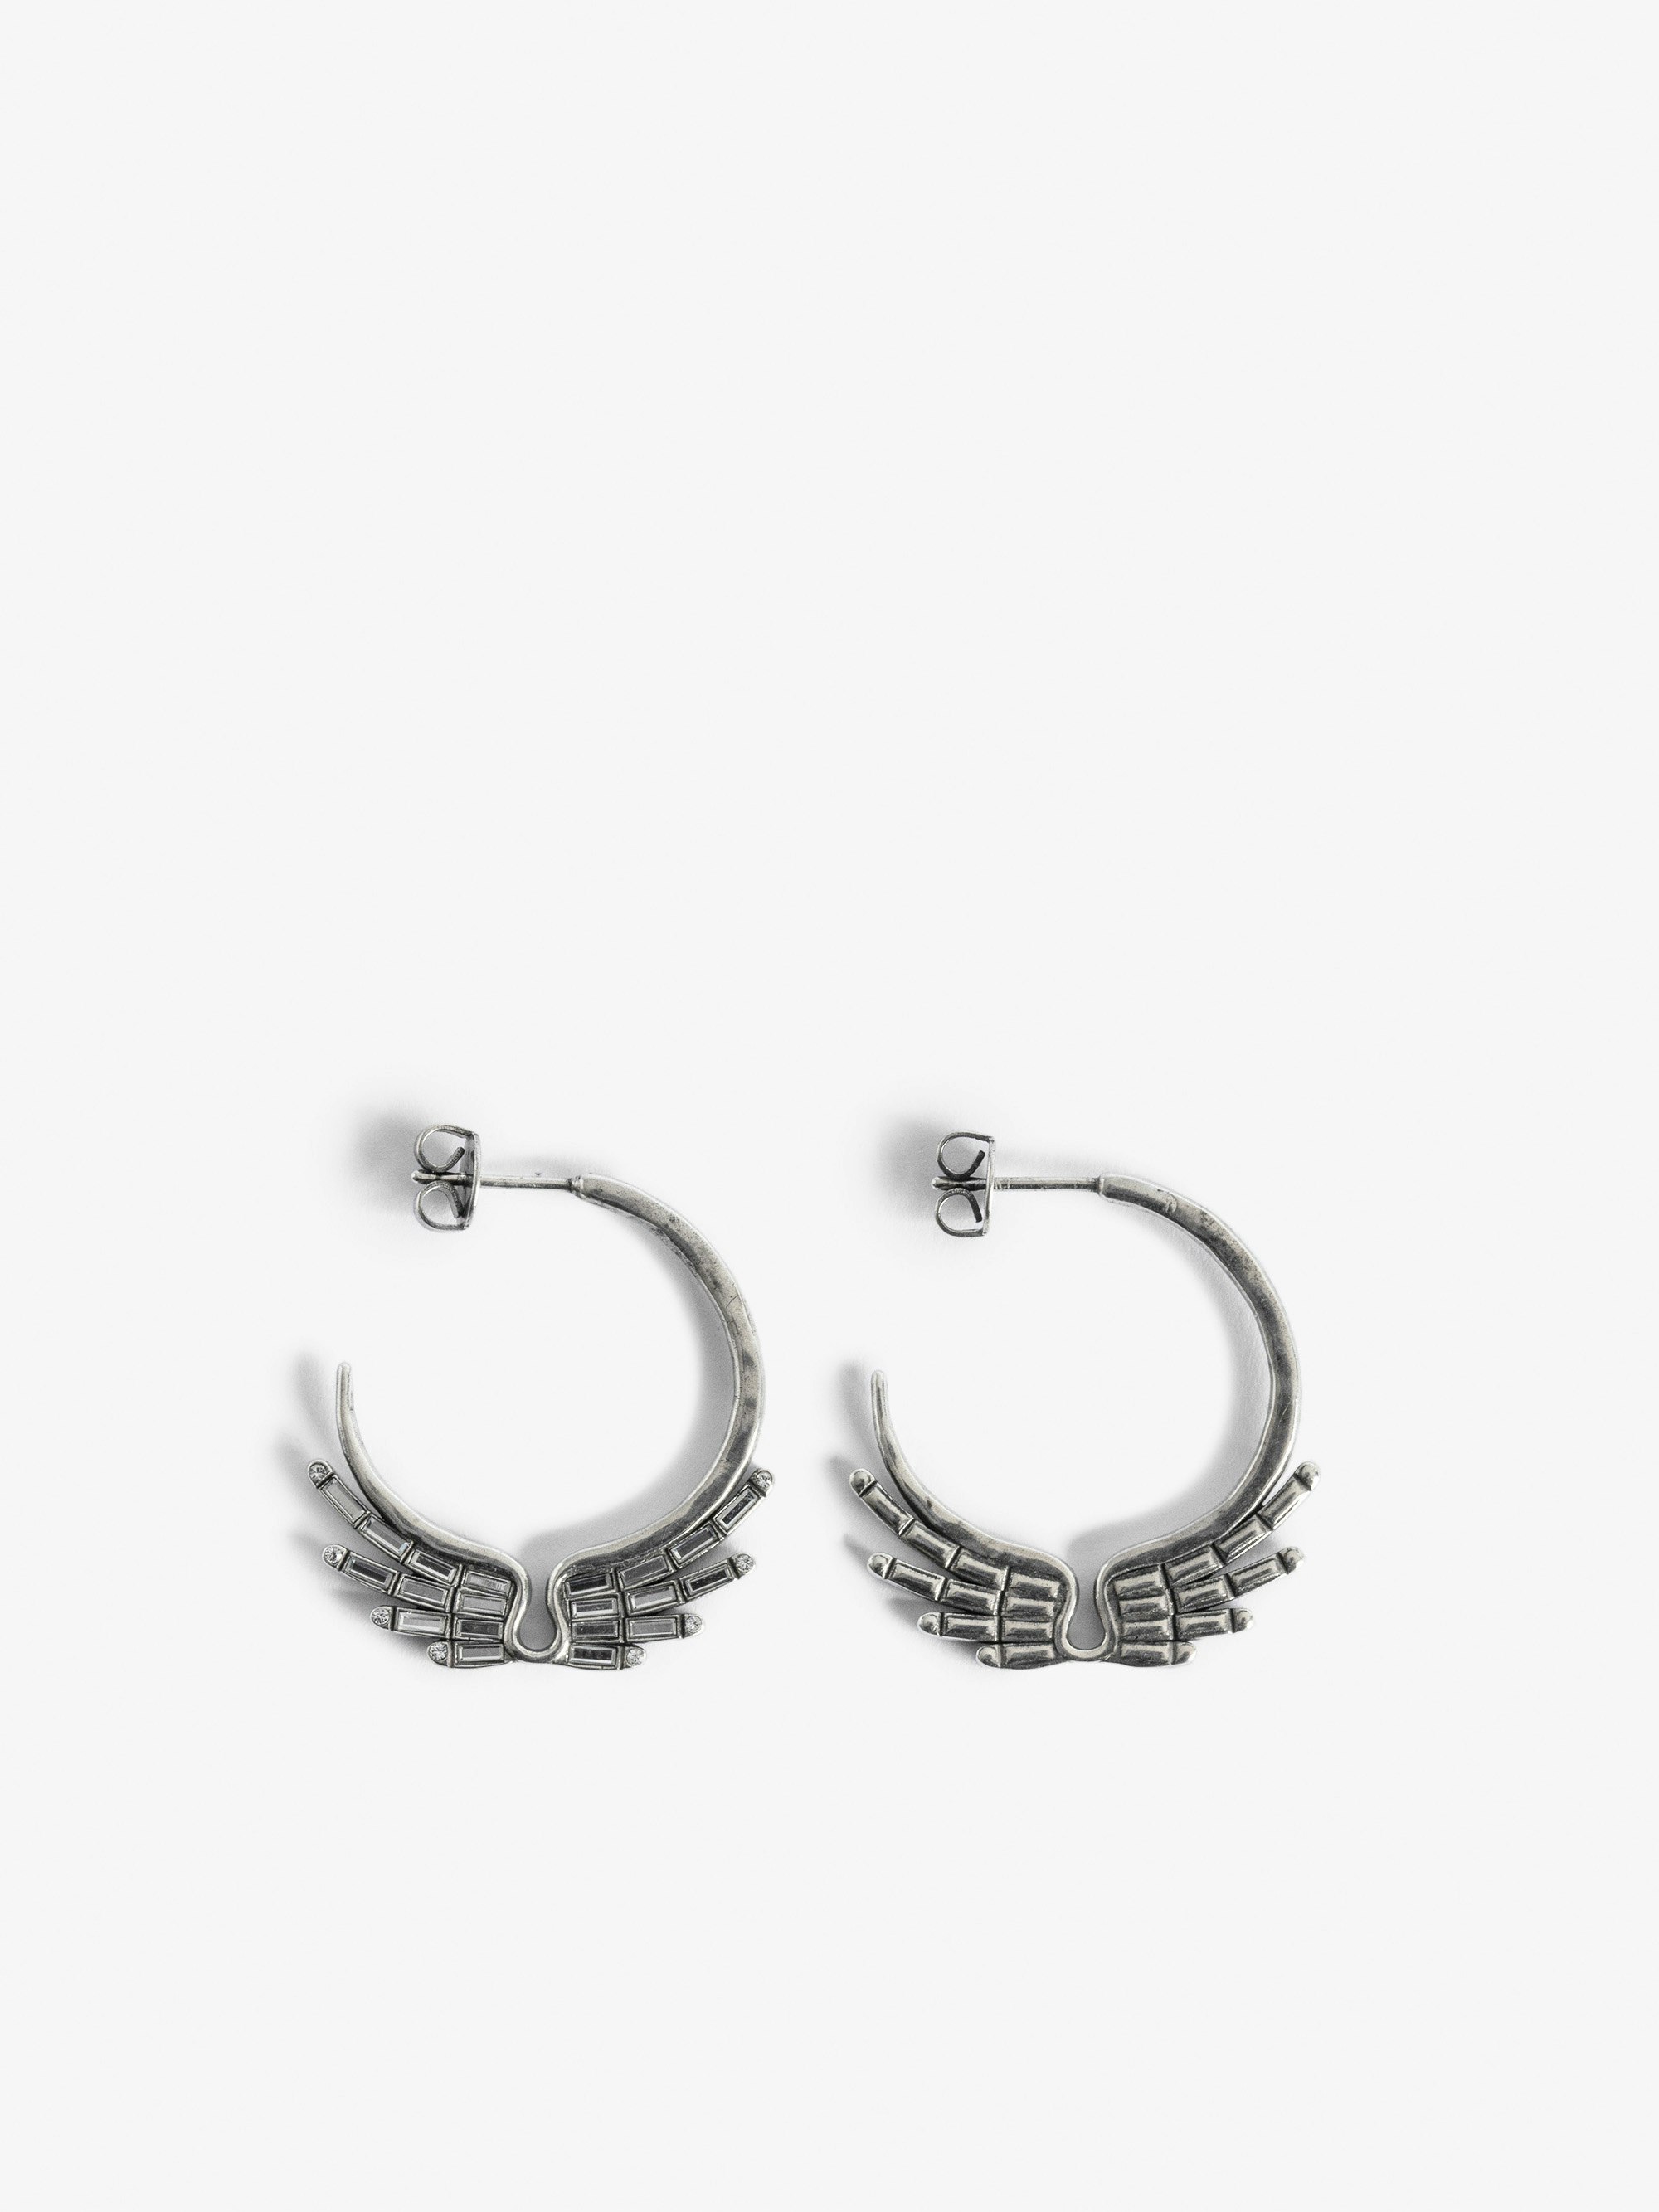 Ohrringe Rock Star - Ohrringe aus versilbertem Messing mit Flügeln verziert.